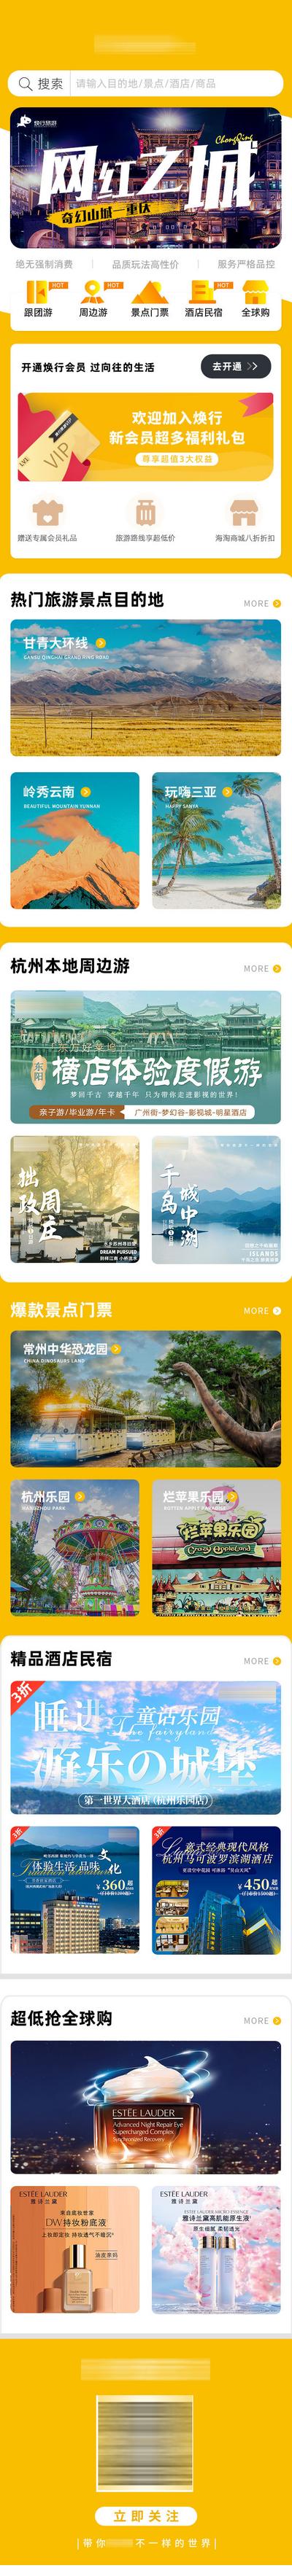 南门网 广告 海报 旅游 APP 旅行 小程序 界面 UI